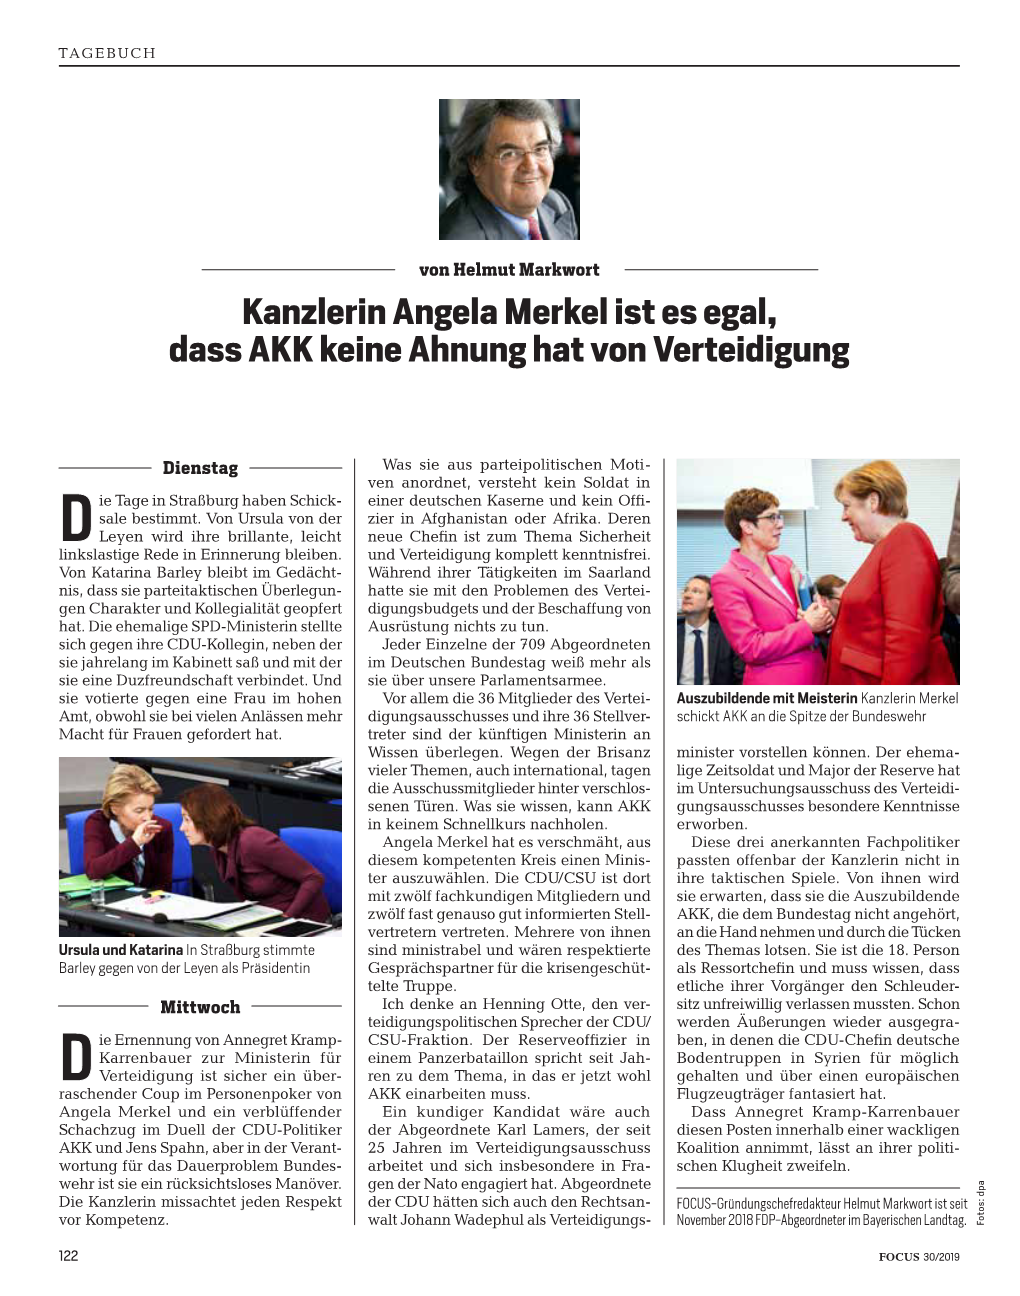 Kanzlerin Angela Merkel Ist Es Egal, Dass AKK Keine Ahnung Hat Von Verteidigung